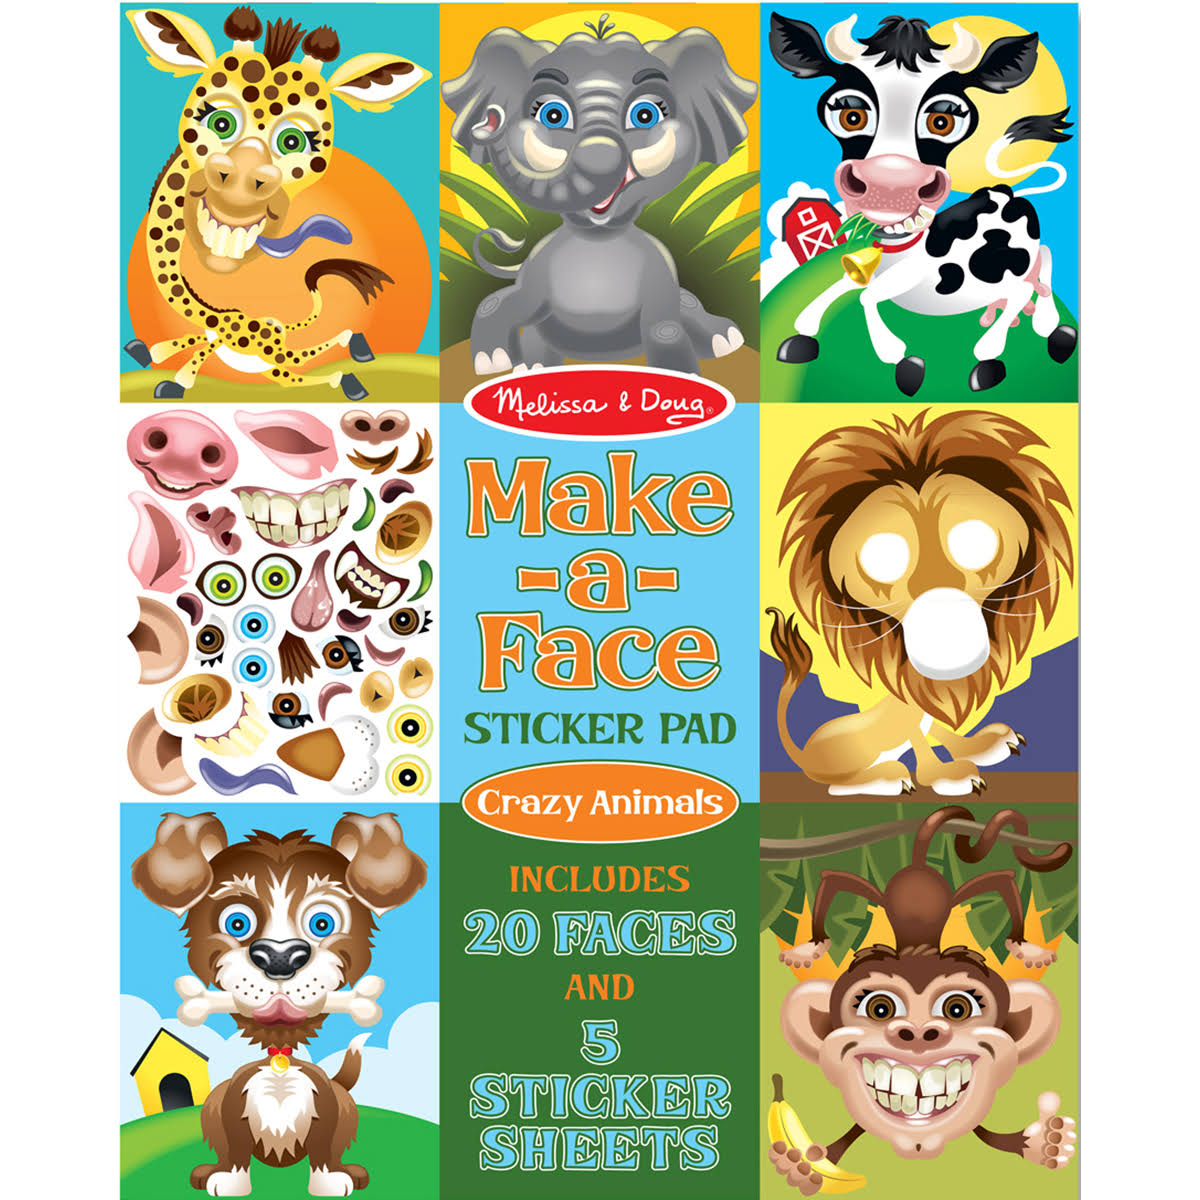 Melissa & Doug Make-a-face Sticker Pad: Crazy Animals